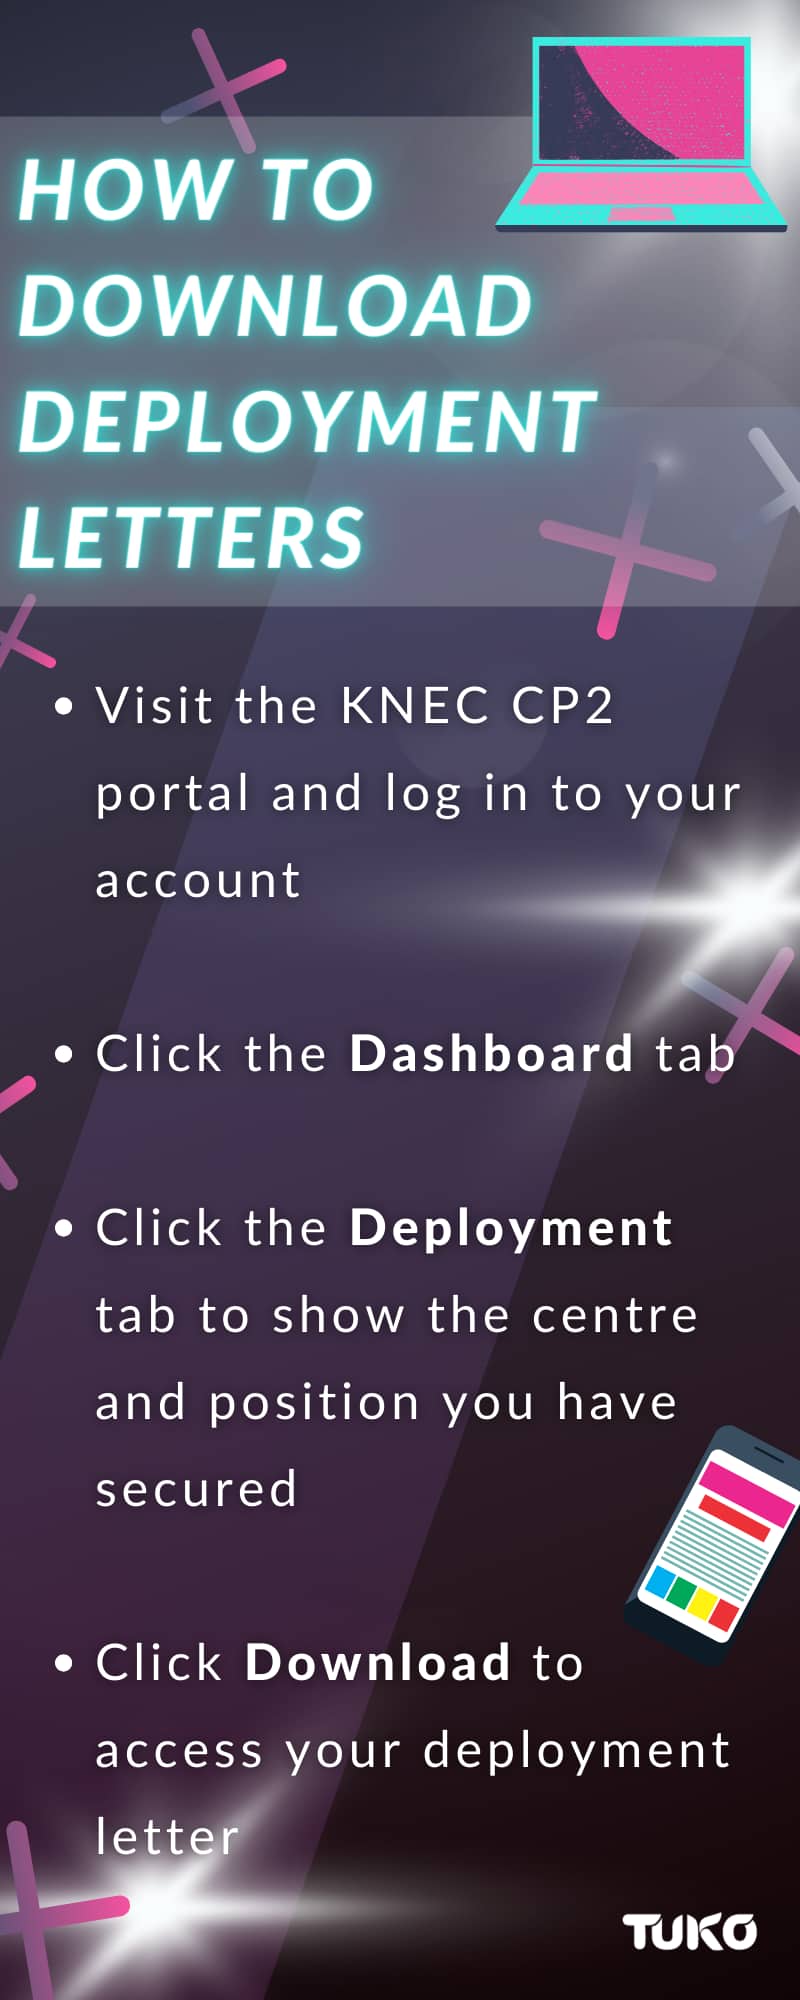 KNEC CP2 portal